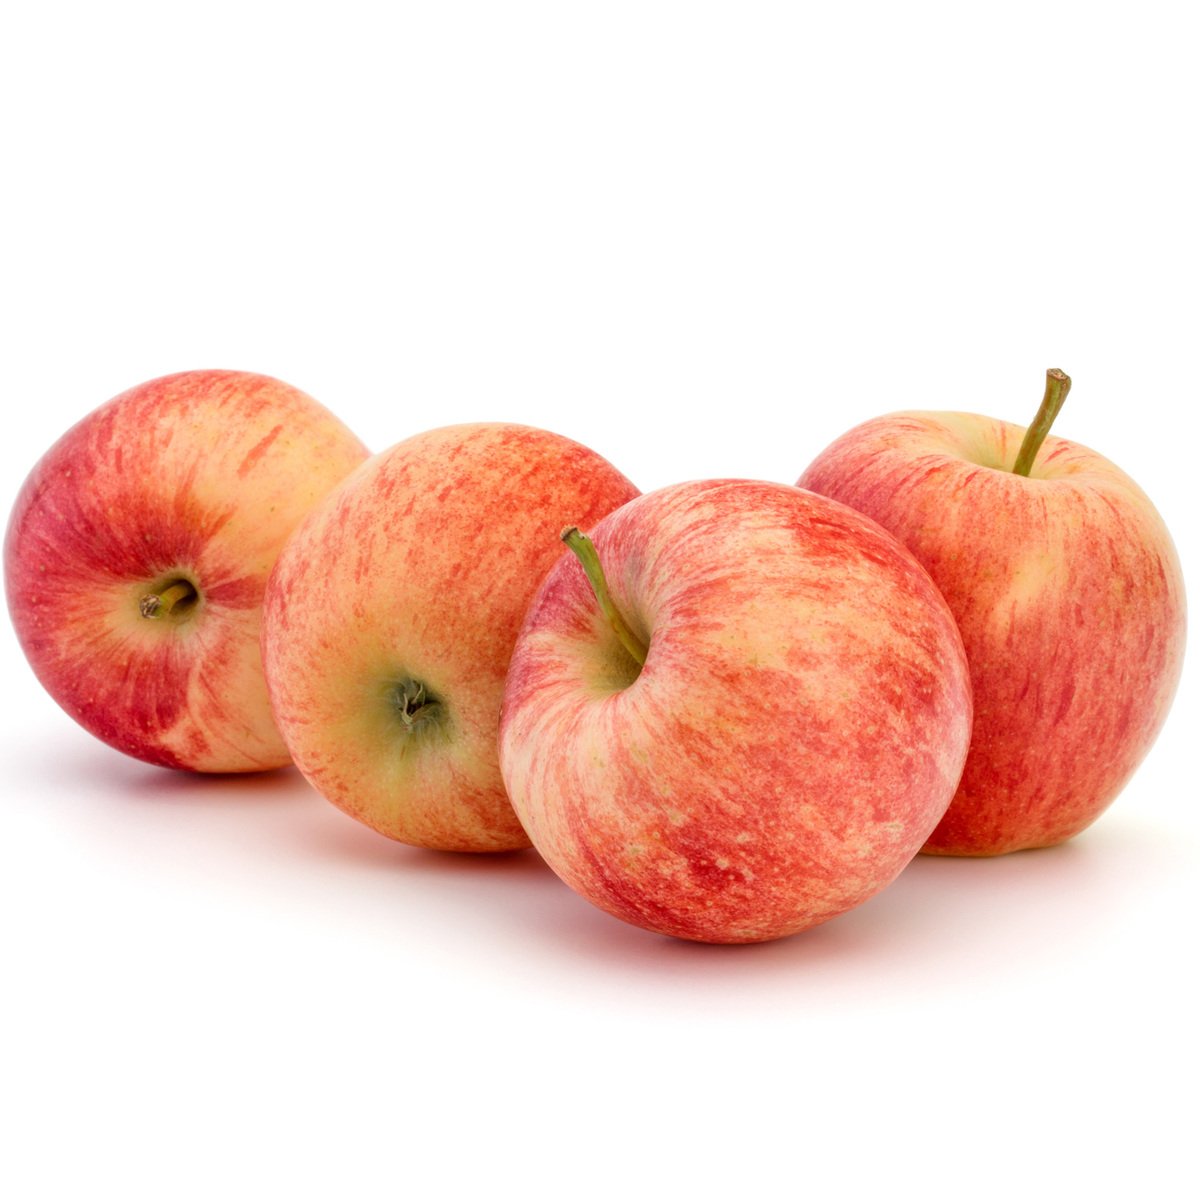 Buy Apple Royal Gala Ukraine 1 kg Online at Best Price | Apples | Lulu UAE in UAE